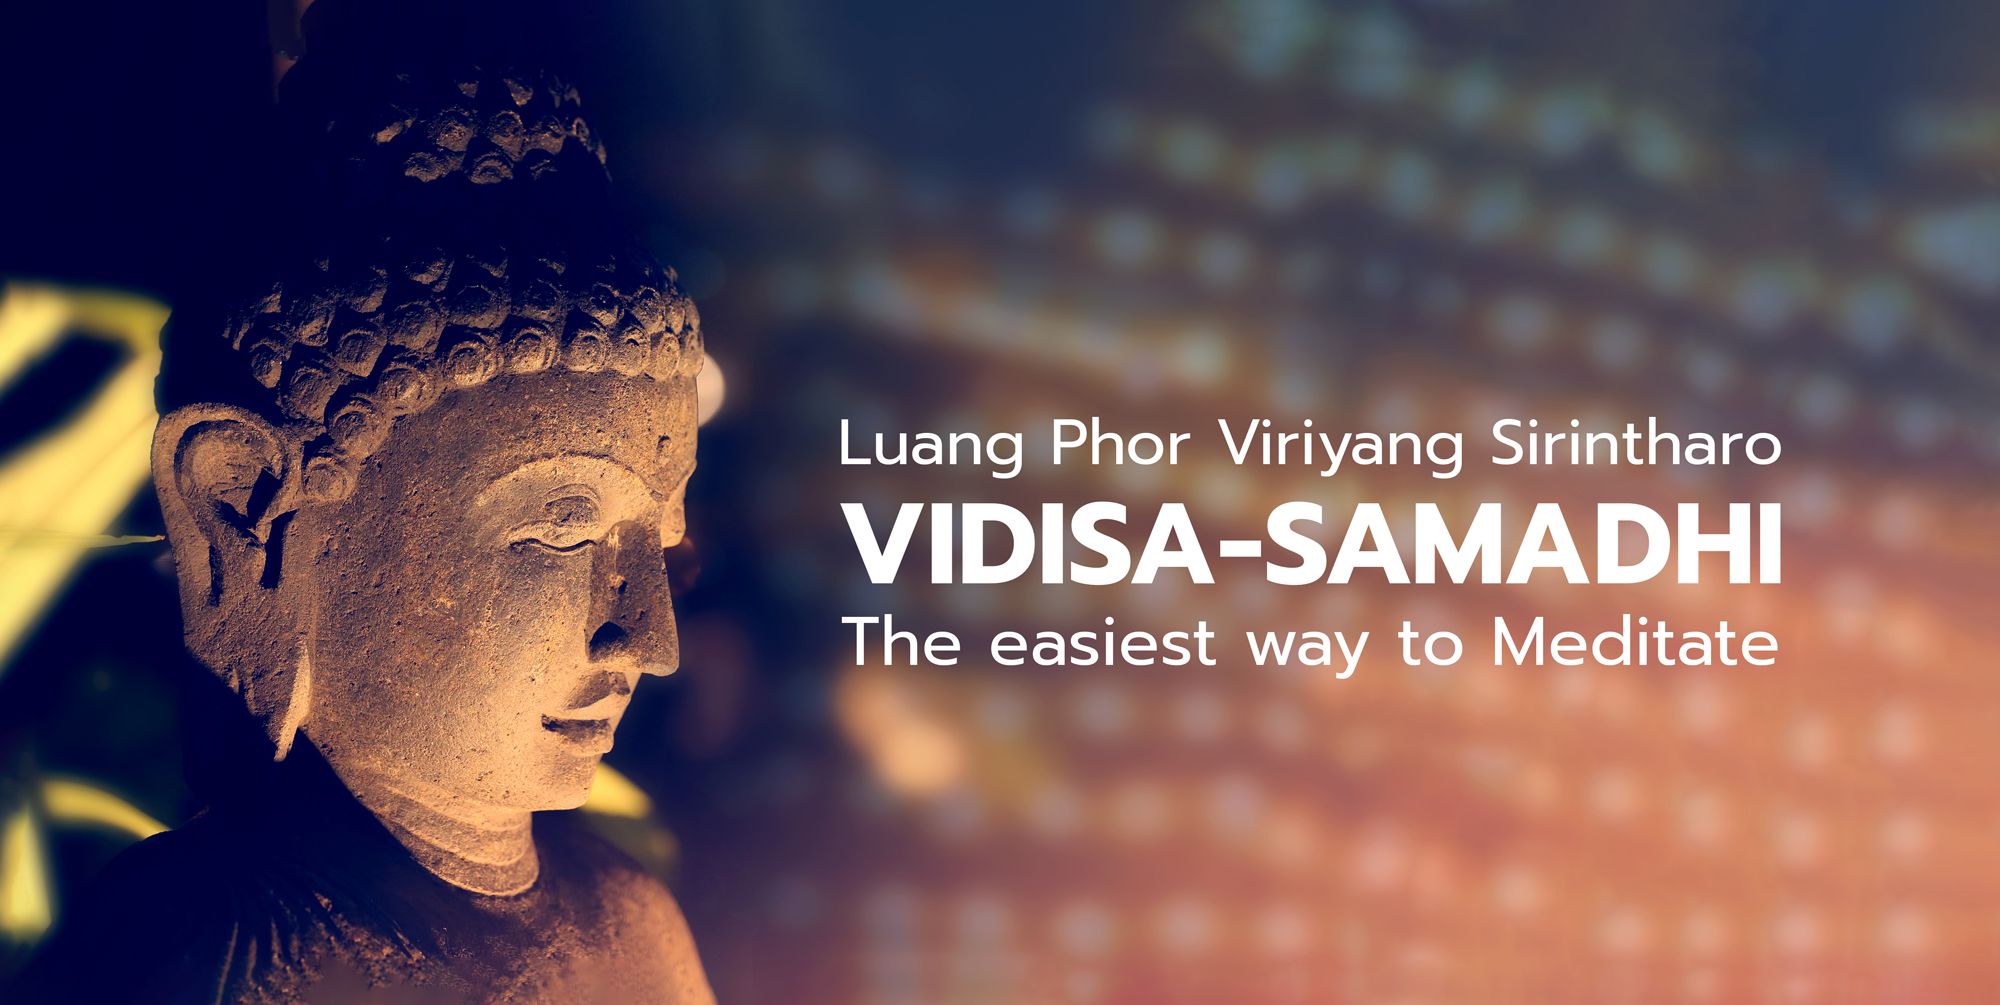 Vidisa-Samadhi | Easy Way to Meditate | Luang Phor Viriyang Sirintharo